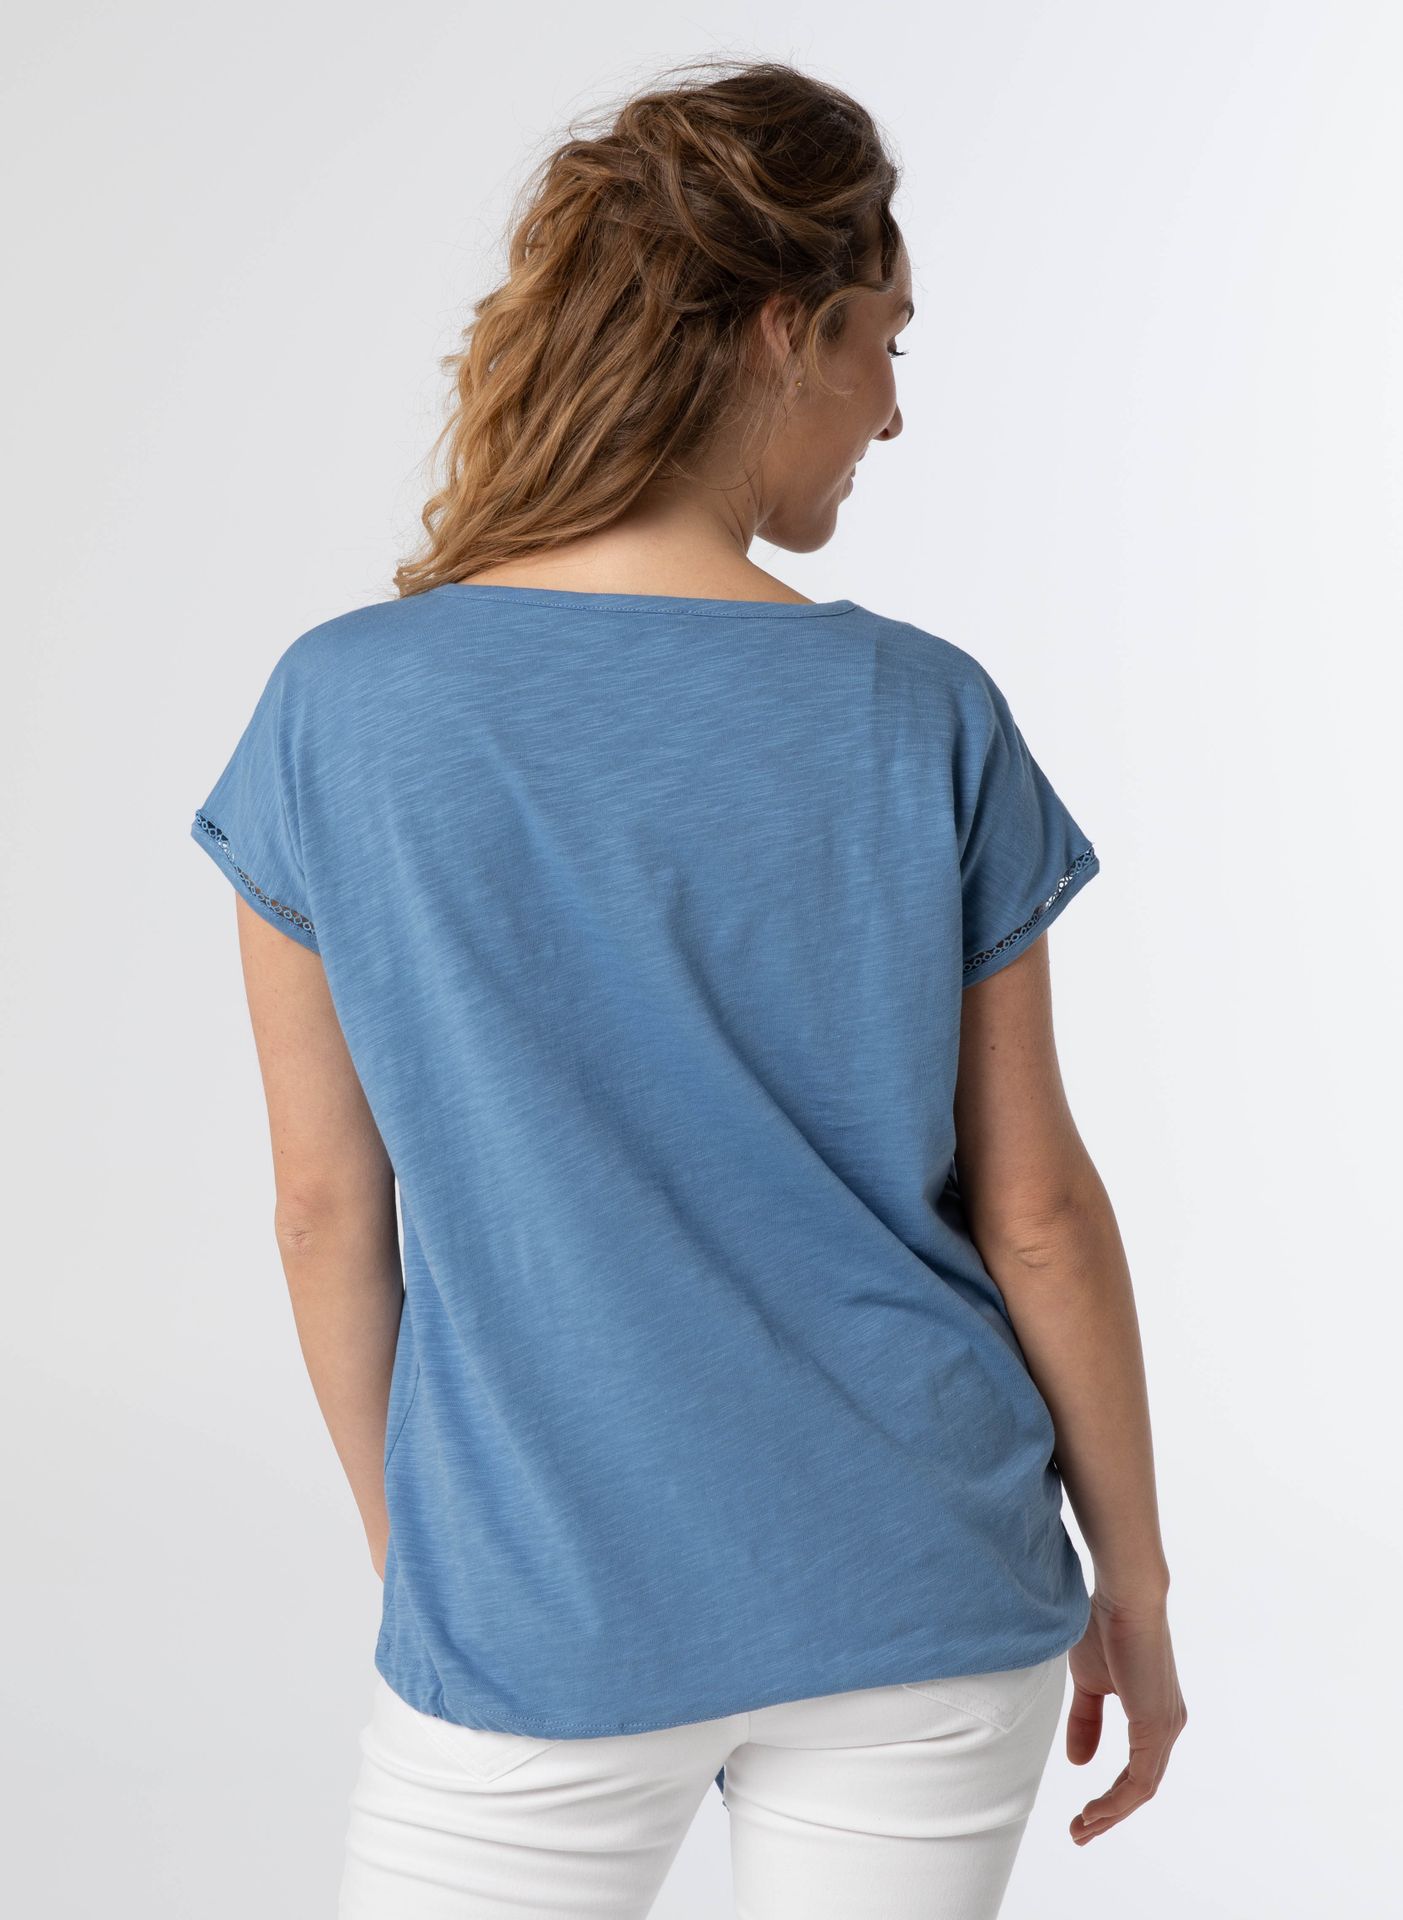 Norah Shirt blauw katoen denim blue 209485-472